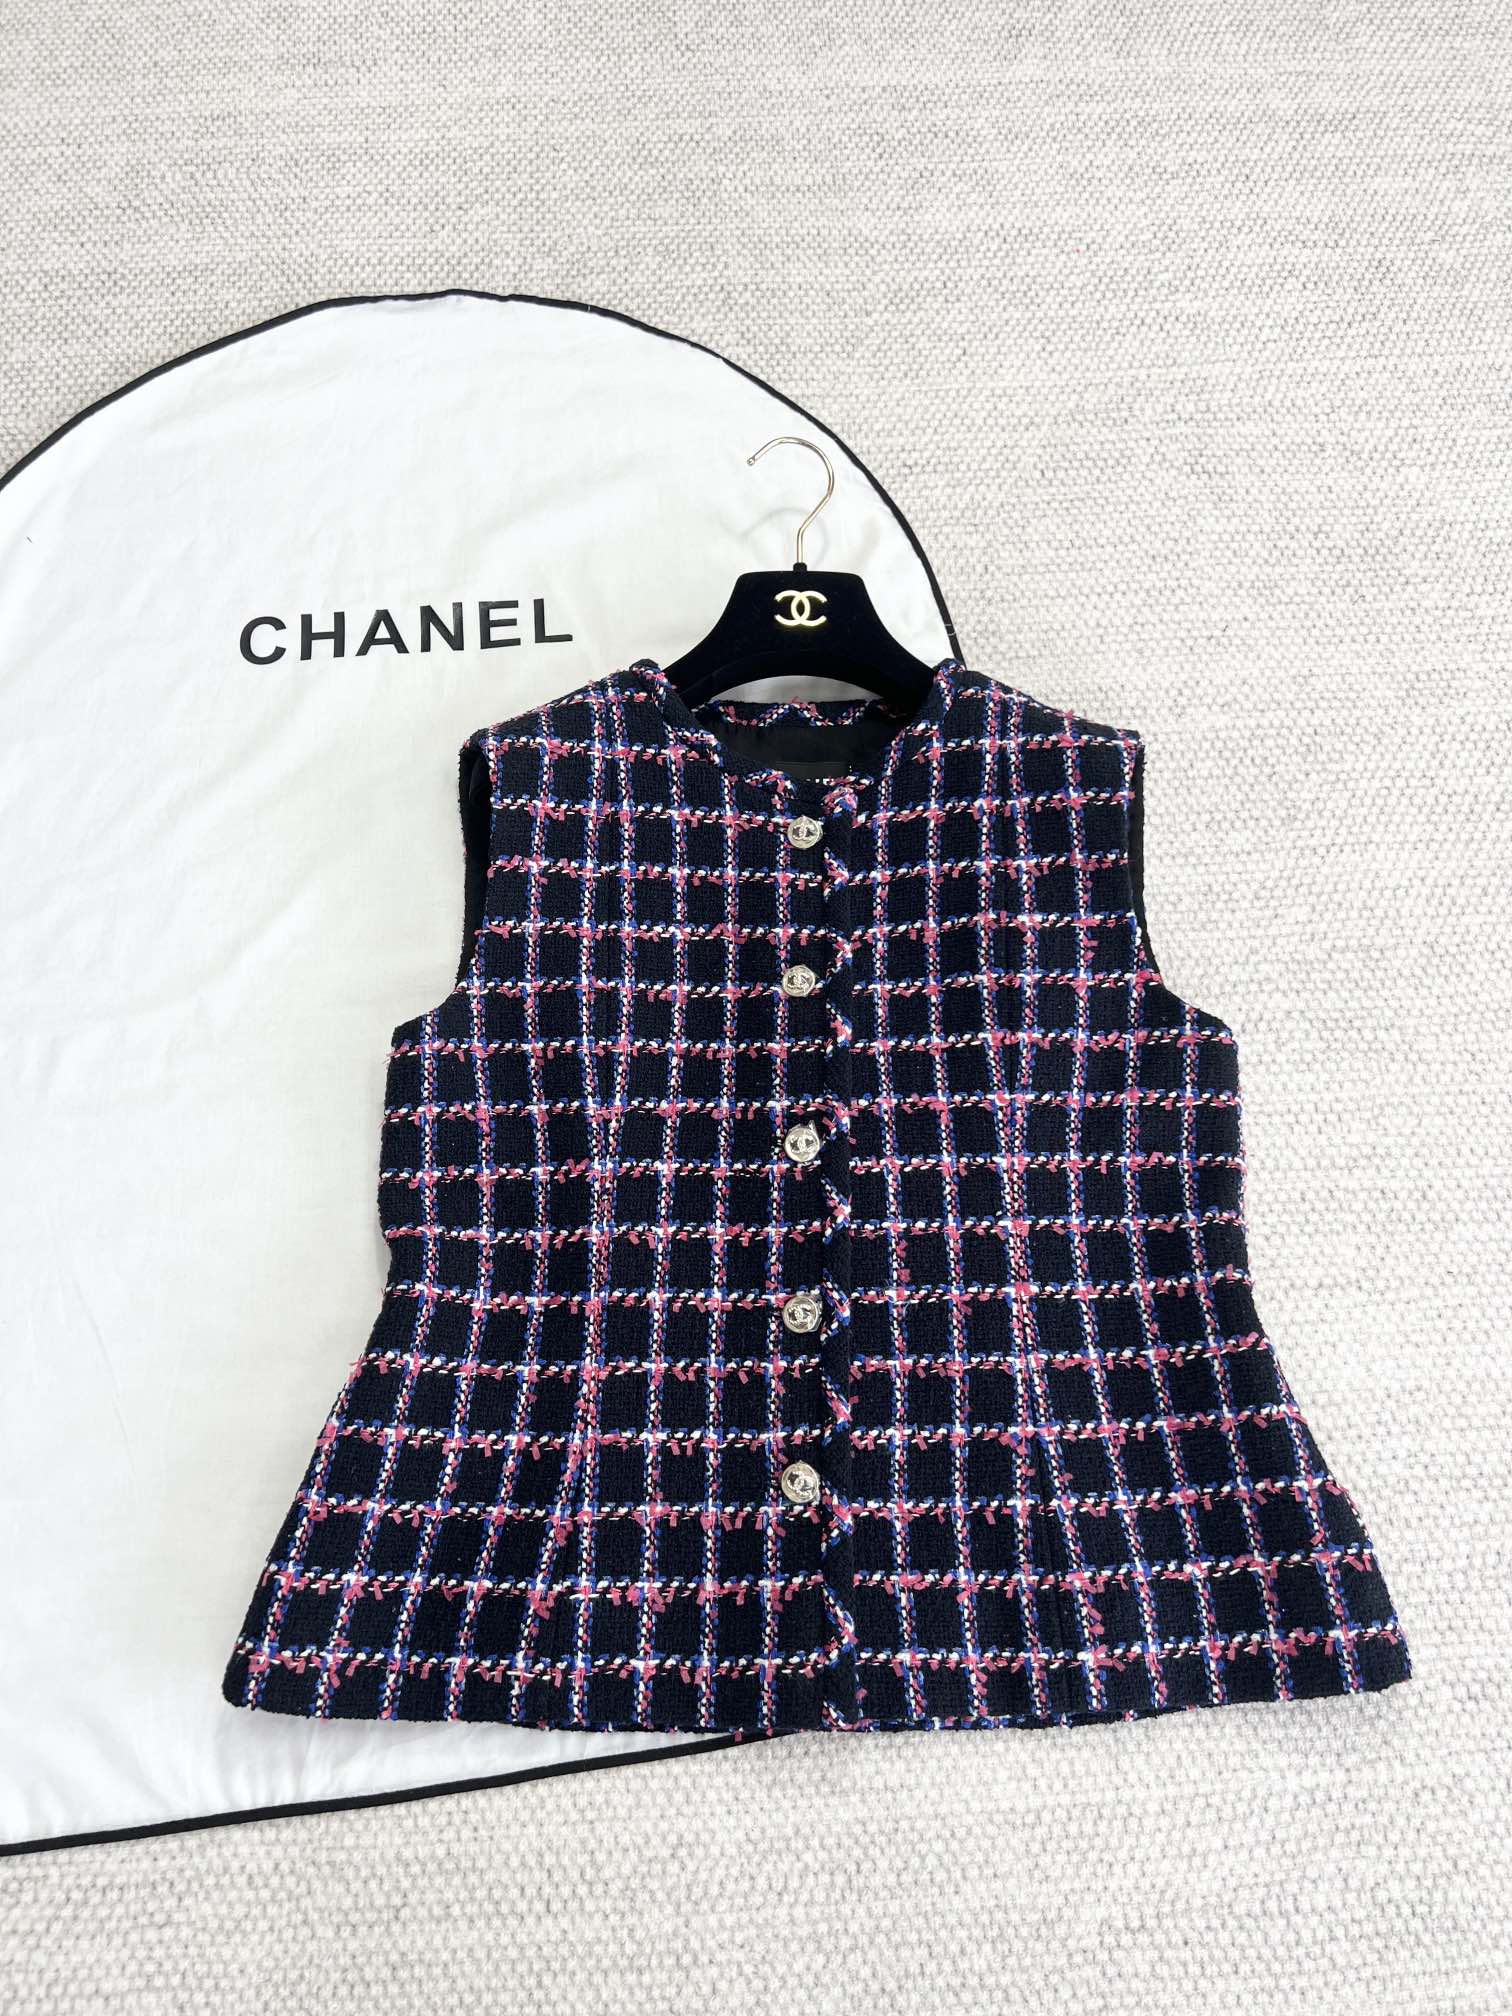 Chanel Qualidade do espelho
 Roupa Colete Azul Rosa Branco Malha Seda